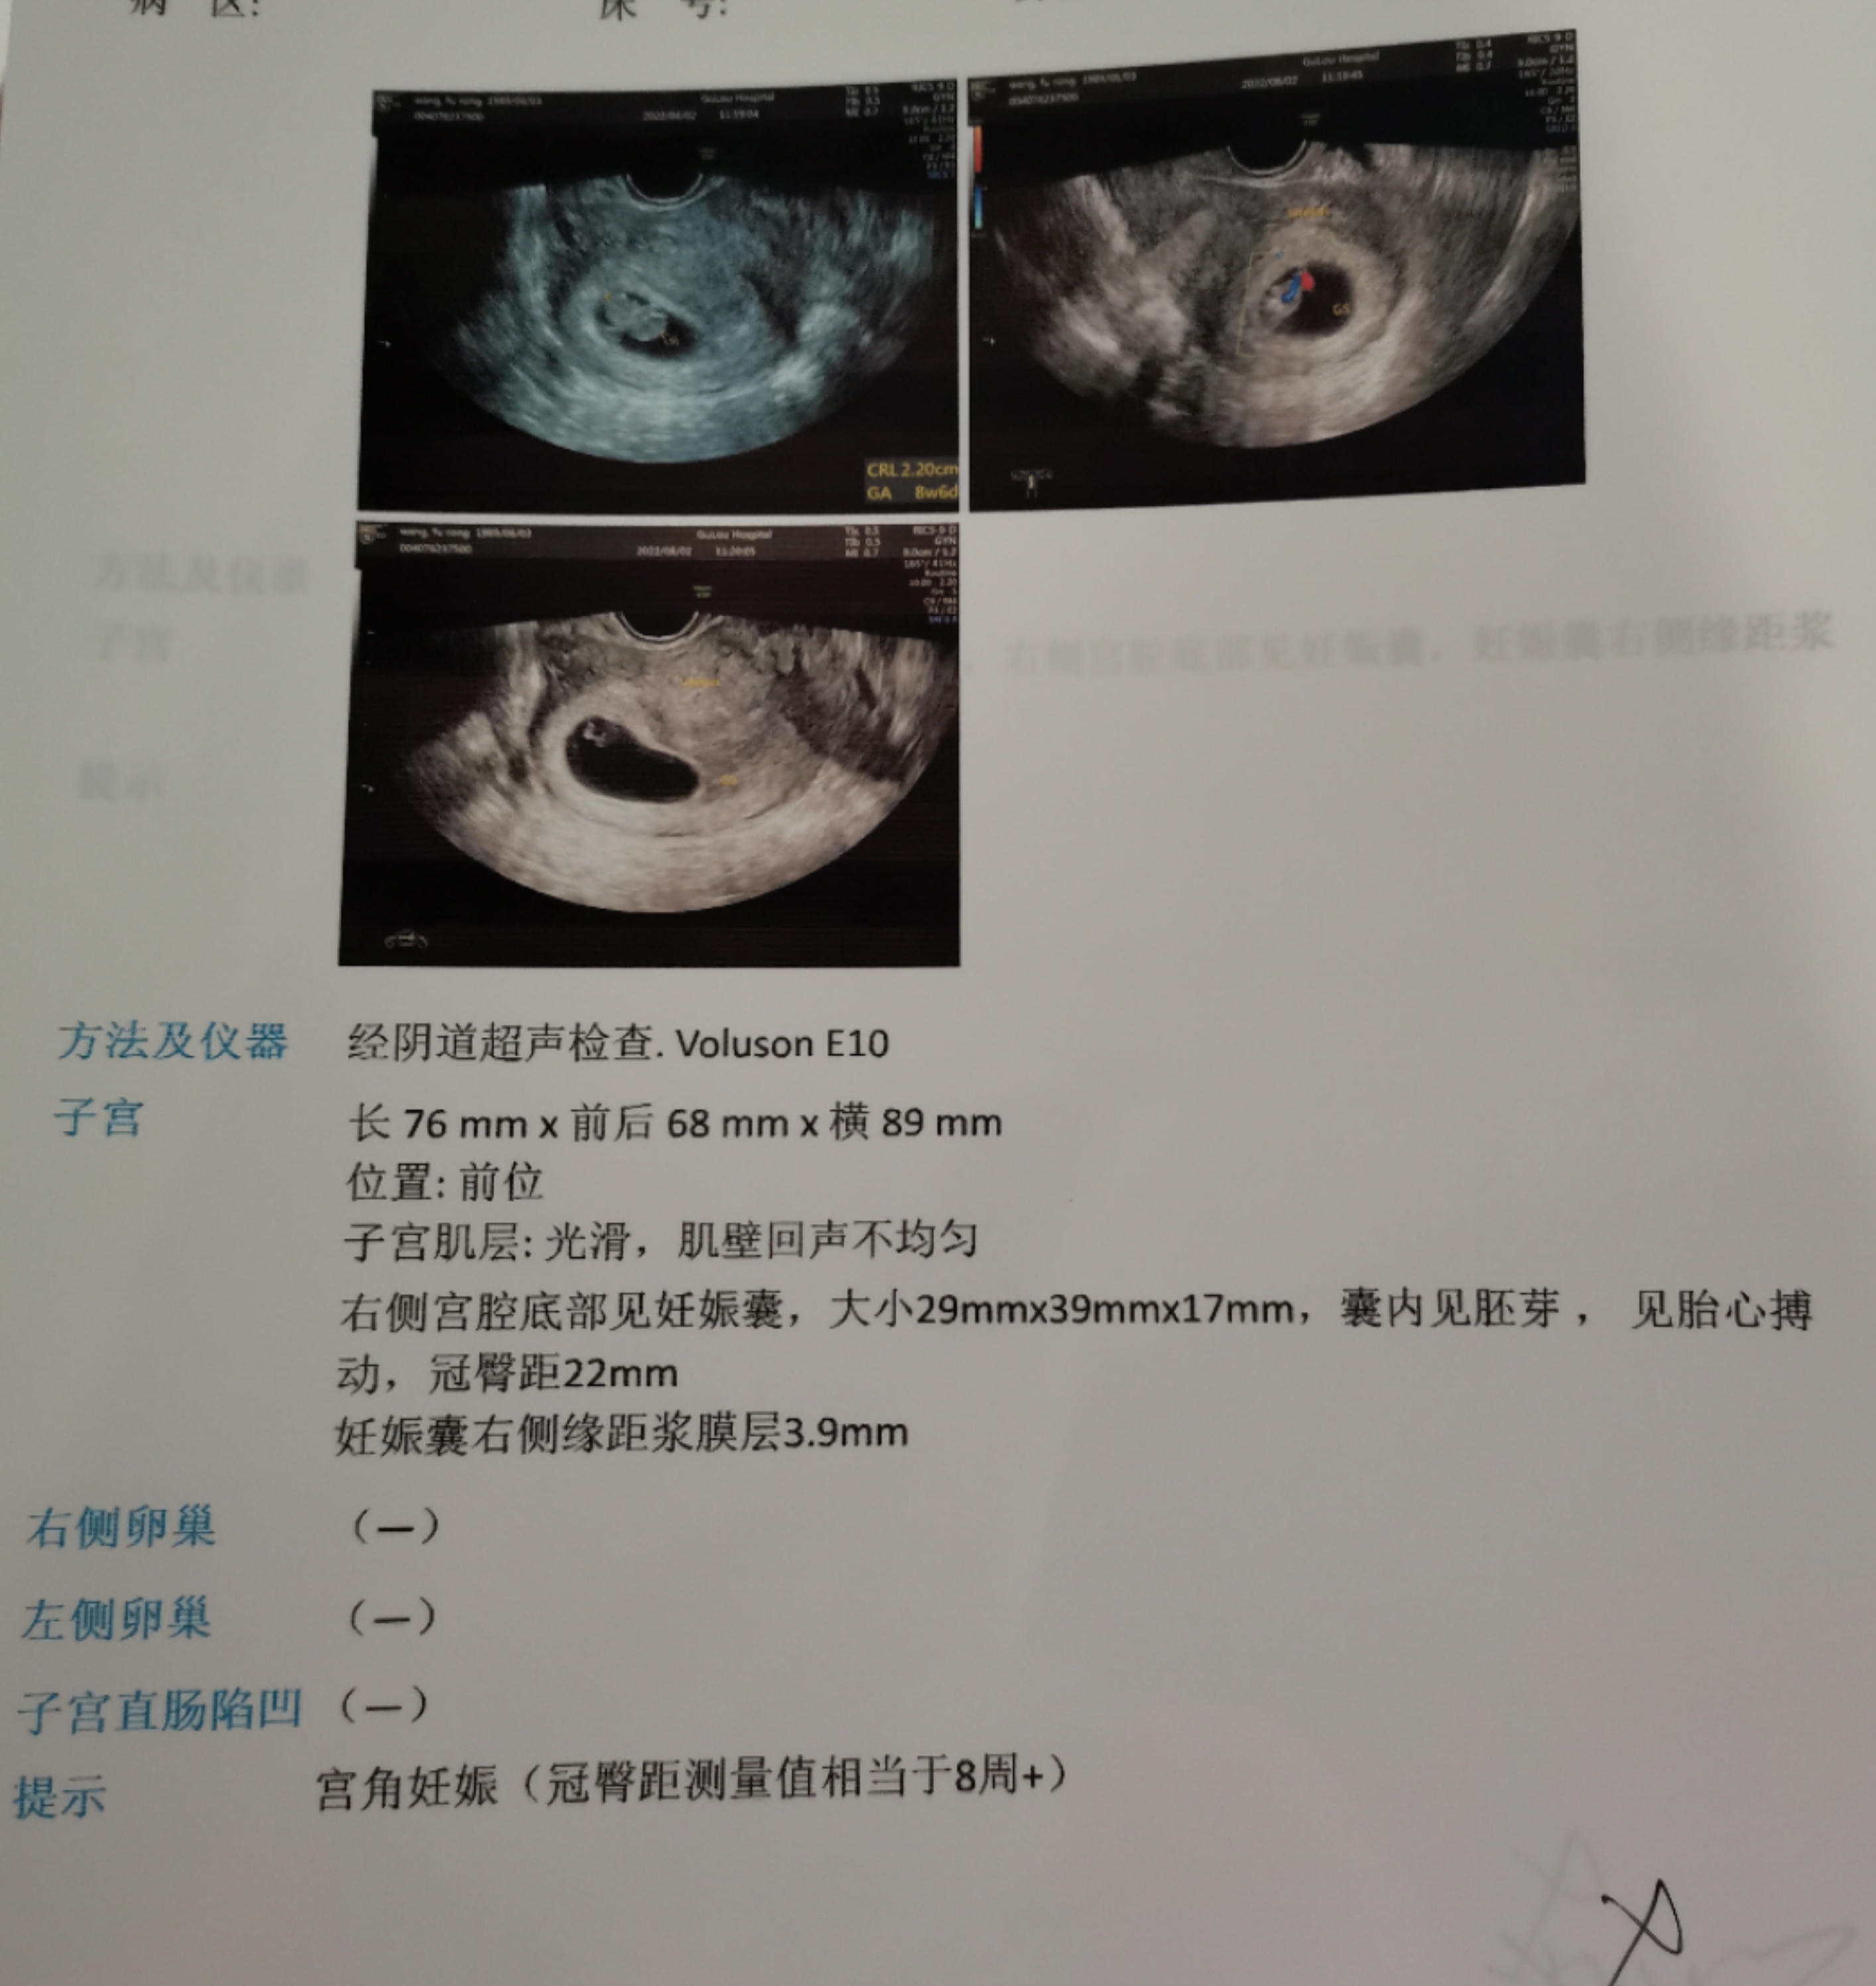 孕九周孕囊偏右侧近宫角最薄处39mm这种情况